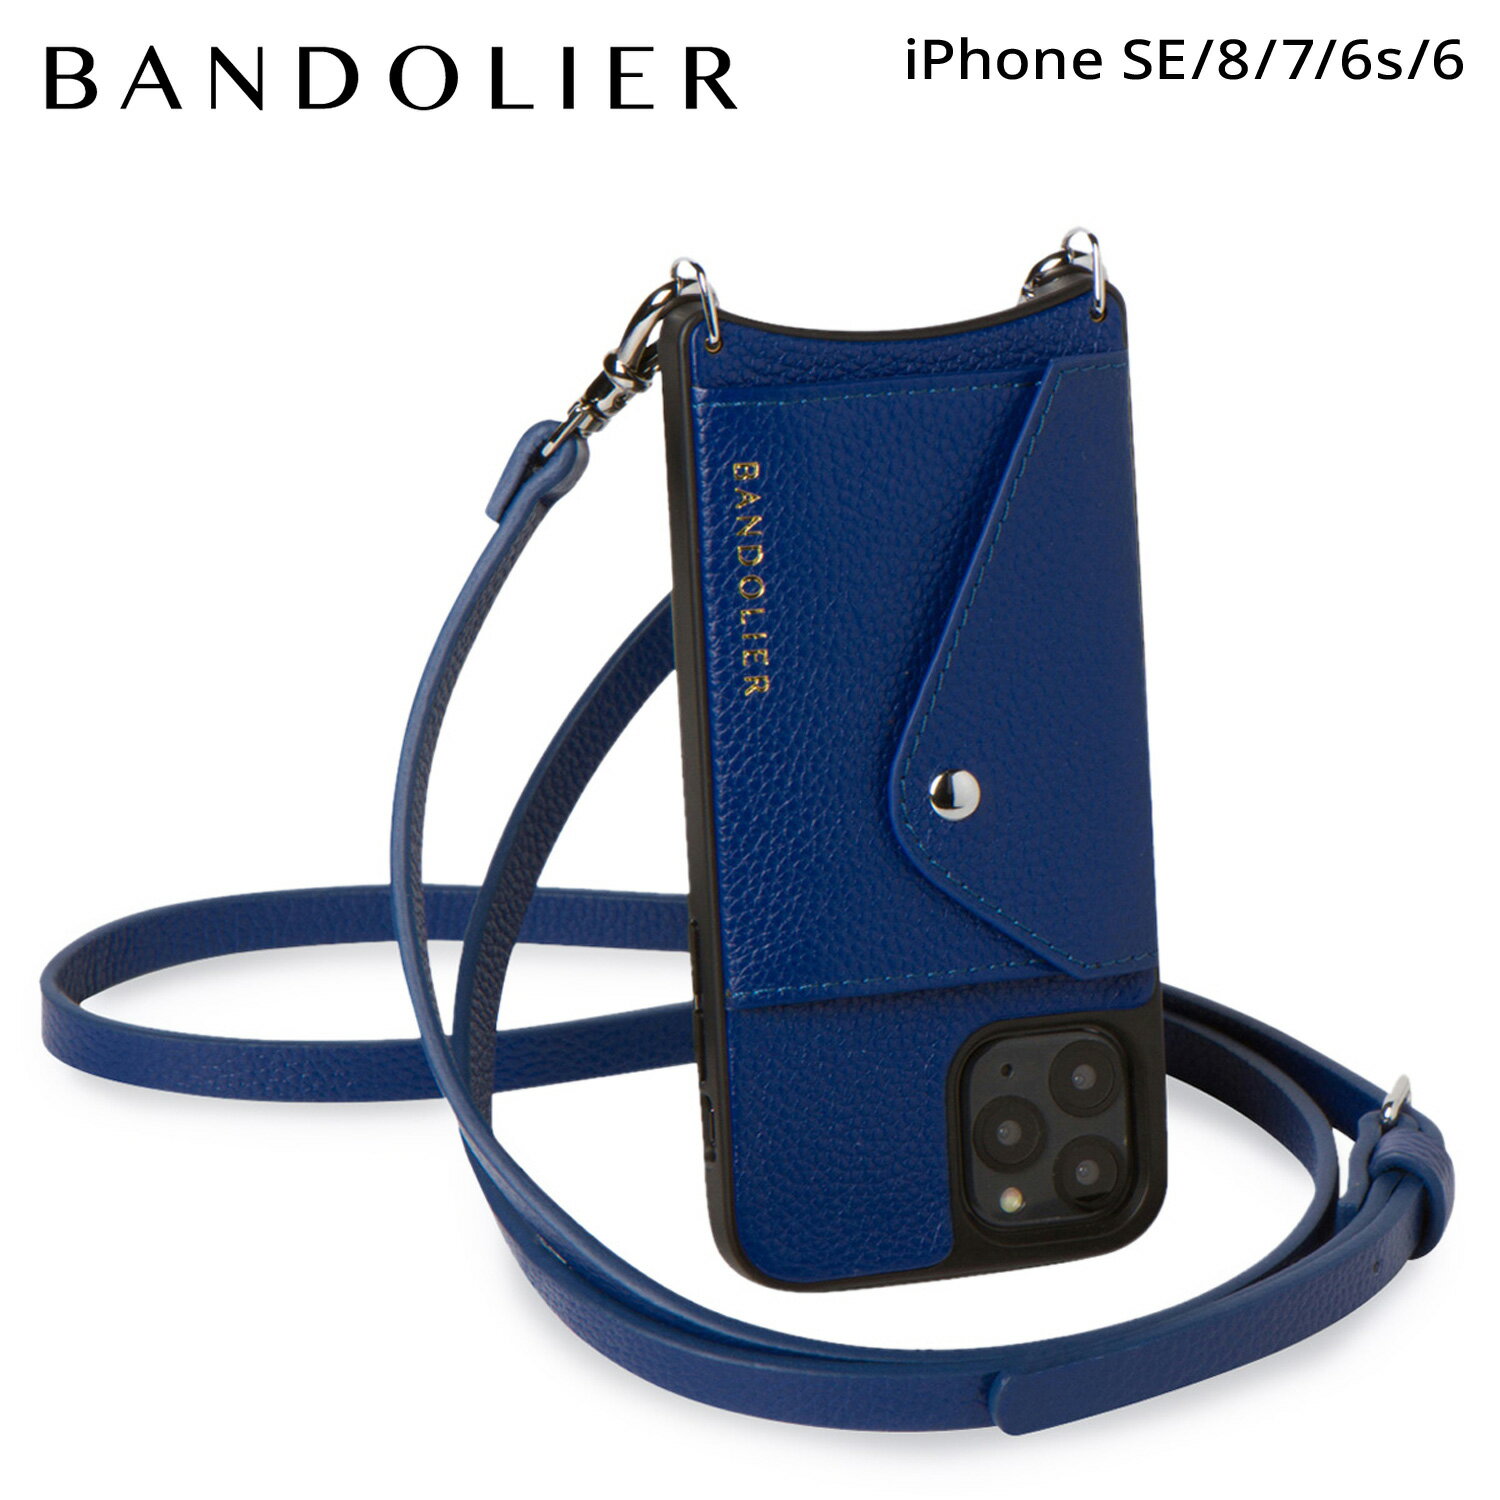 バンドリヤー BANDOLIER iPhone SE SE2 8 iPhone 7 6s ケース スマホケース 携帯 ショルダー アイフォン ドナ サイドスロット ロイヤルブルー メンズ レディース DONNA SIDE SLOT ROYAL BLUE ブルー 14DON